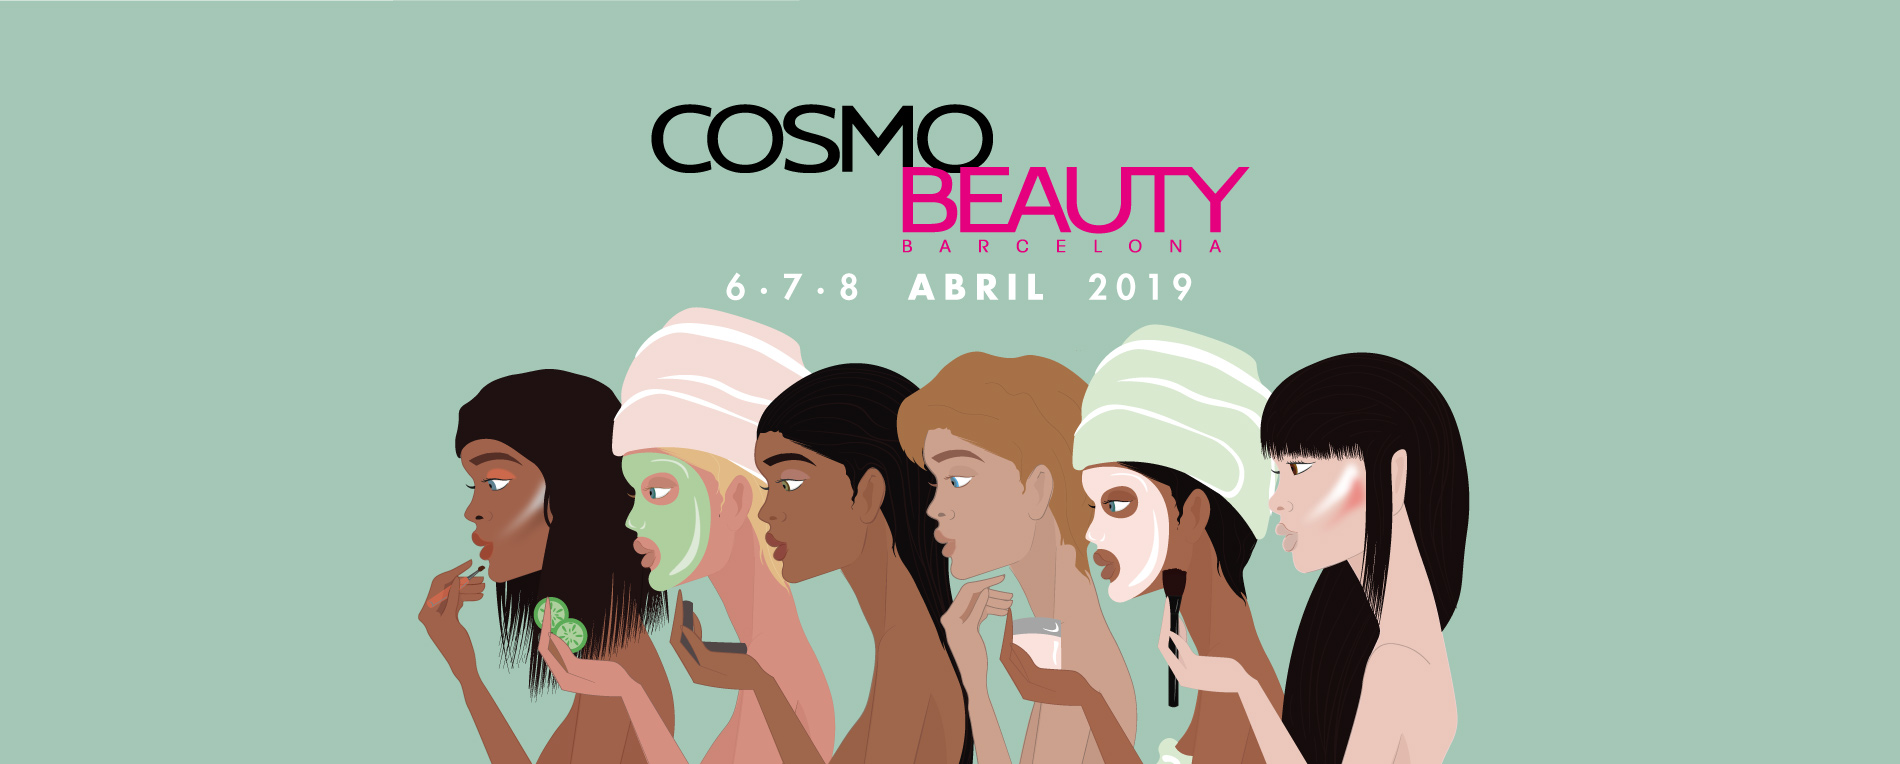 Cosmobeauty Barcelona - Banner 2019